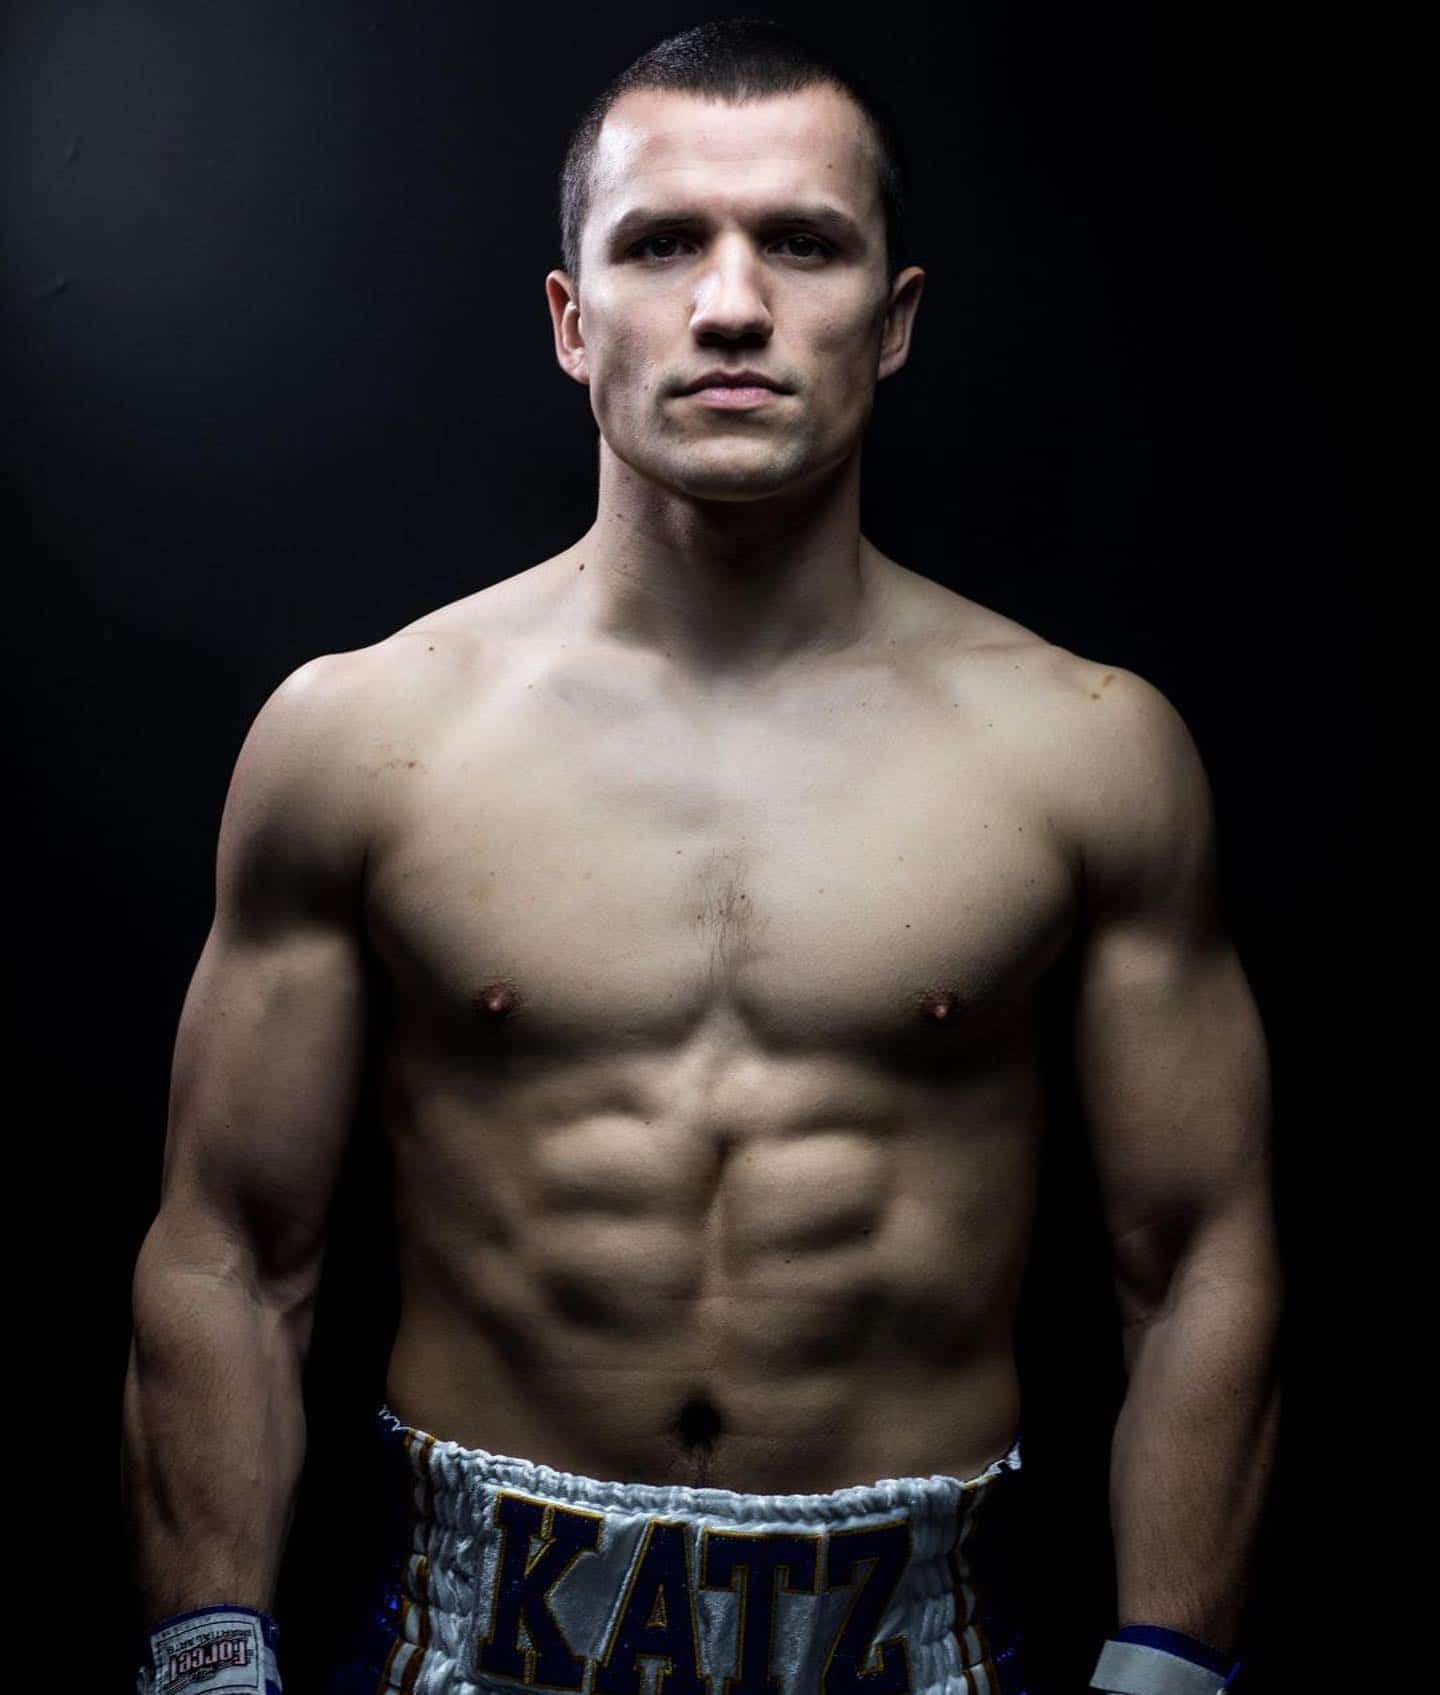 Greek boxer Andreas Katzourakis